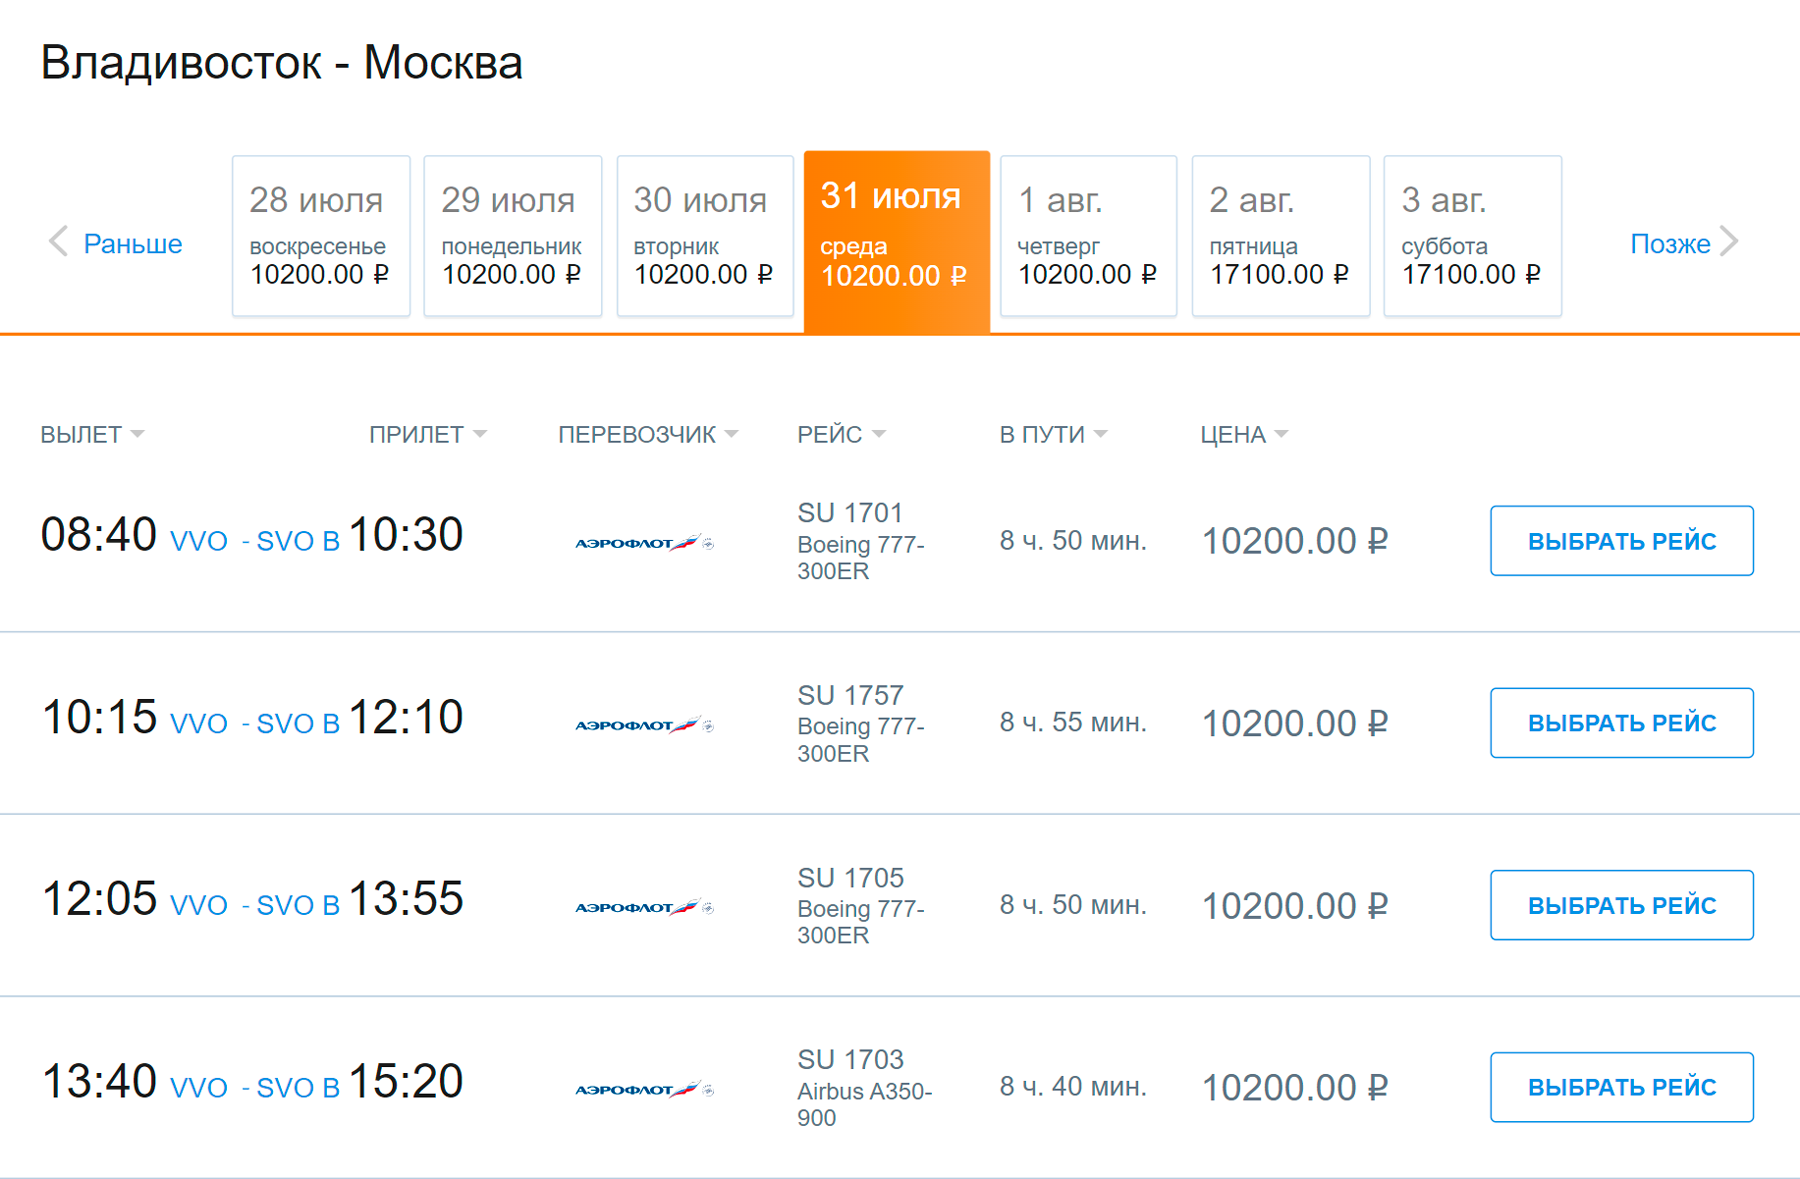 Субсидируемый билет обойдется дальневосточникам в 10 200 ₽. Источник: aeroflot.ru